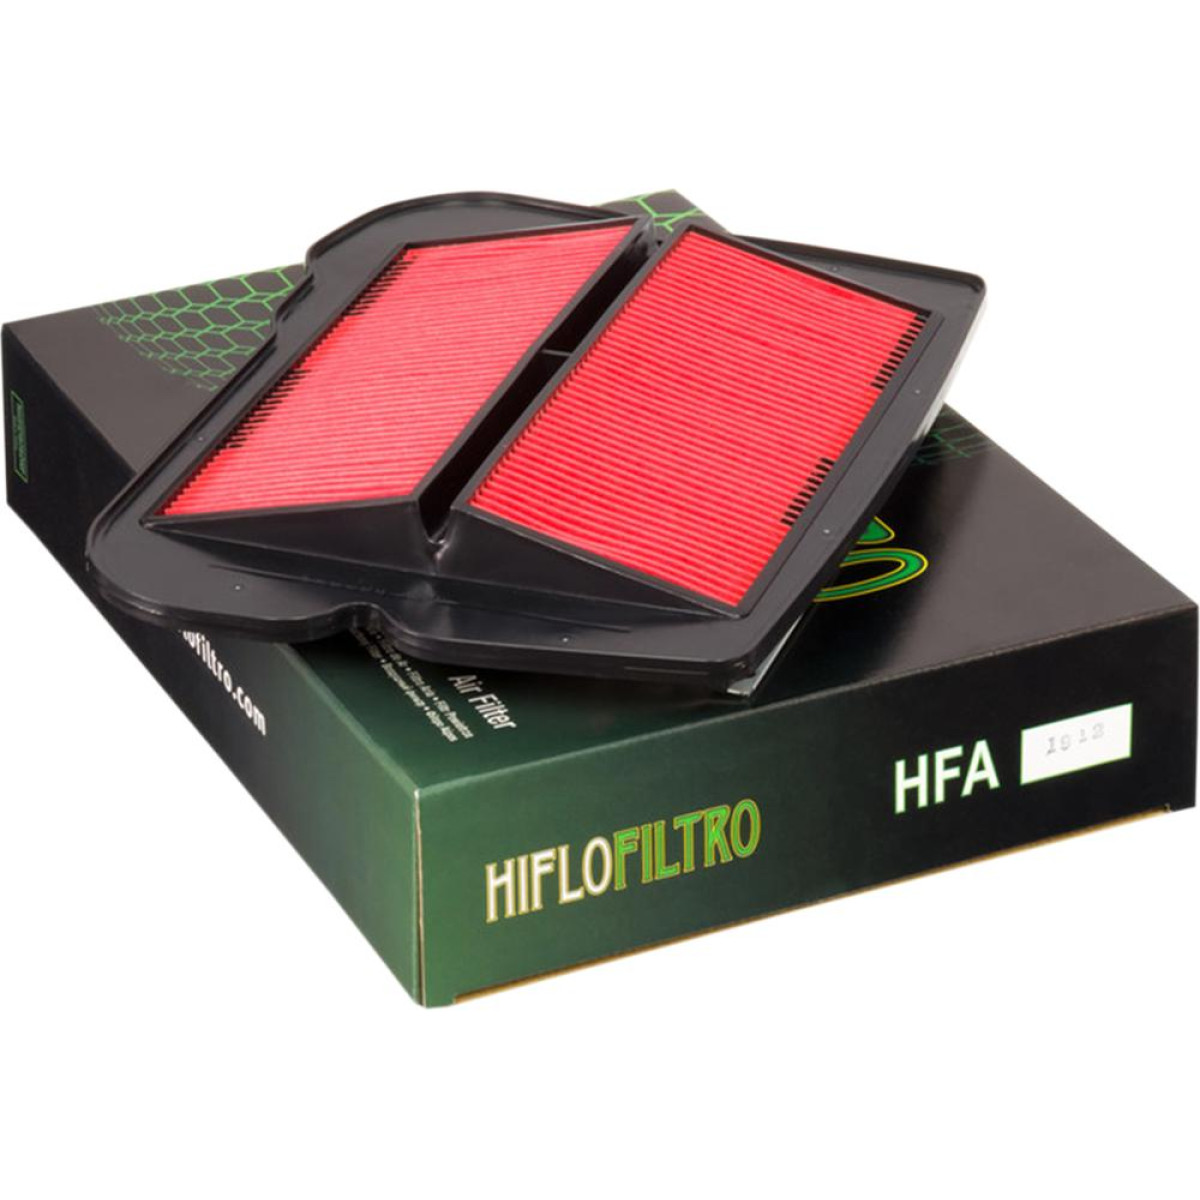 FILTRO AIRE HIFLOFILTRO HFA1912 HONDA GL1500 88/03